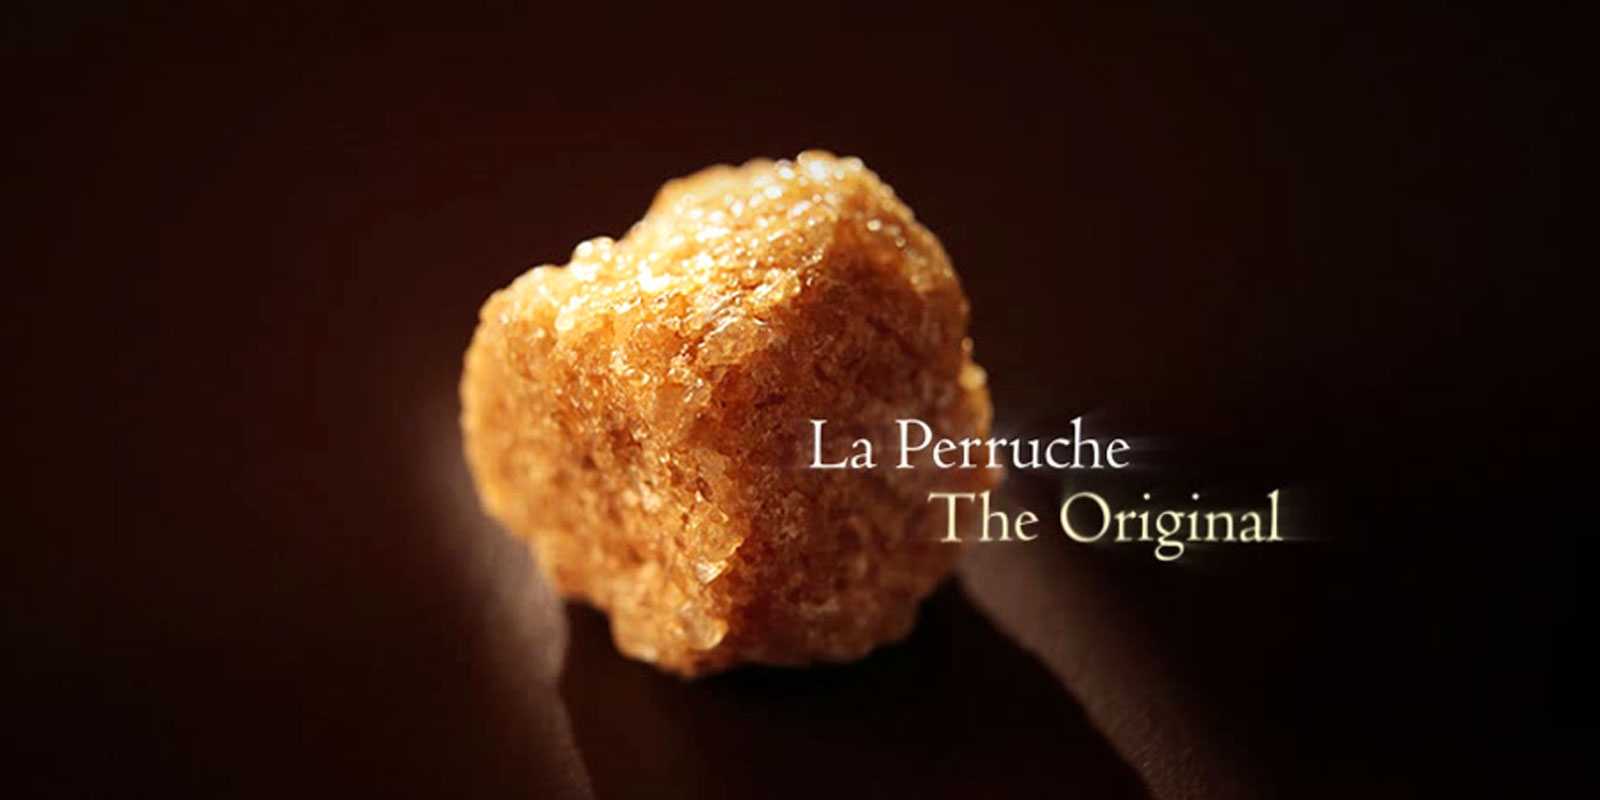 La Perruche - rietsuiker La Perruche is een uitzonderlijk product, met een bijzondere smaak die iedereen zal bekoren die een fijne en verfijnde smaak op prijs stelt. Heel eenvoudig: het tovert puur plezier in uw zintuigen. La Perruche wordt geleverd in onregelmatige suikerklontjes in wit of goudbruin. Kristalvorm in de shaker, ook wel cassonade genoemd.